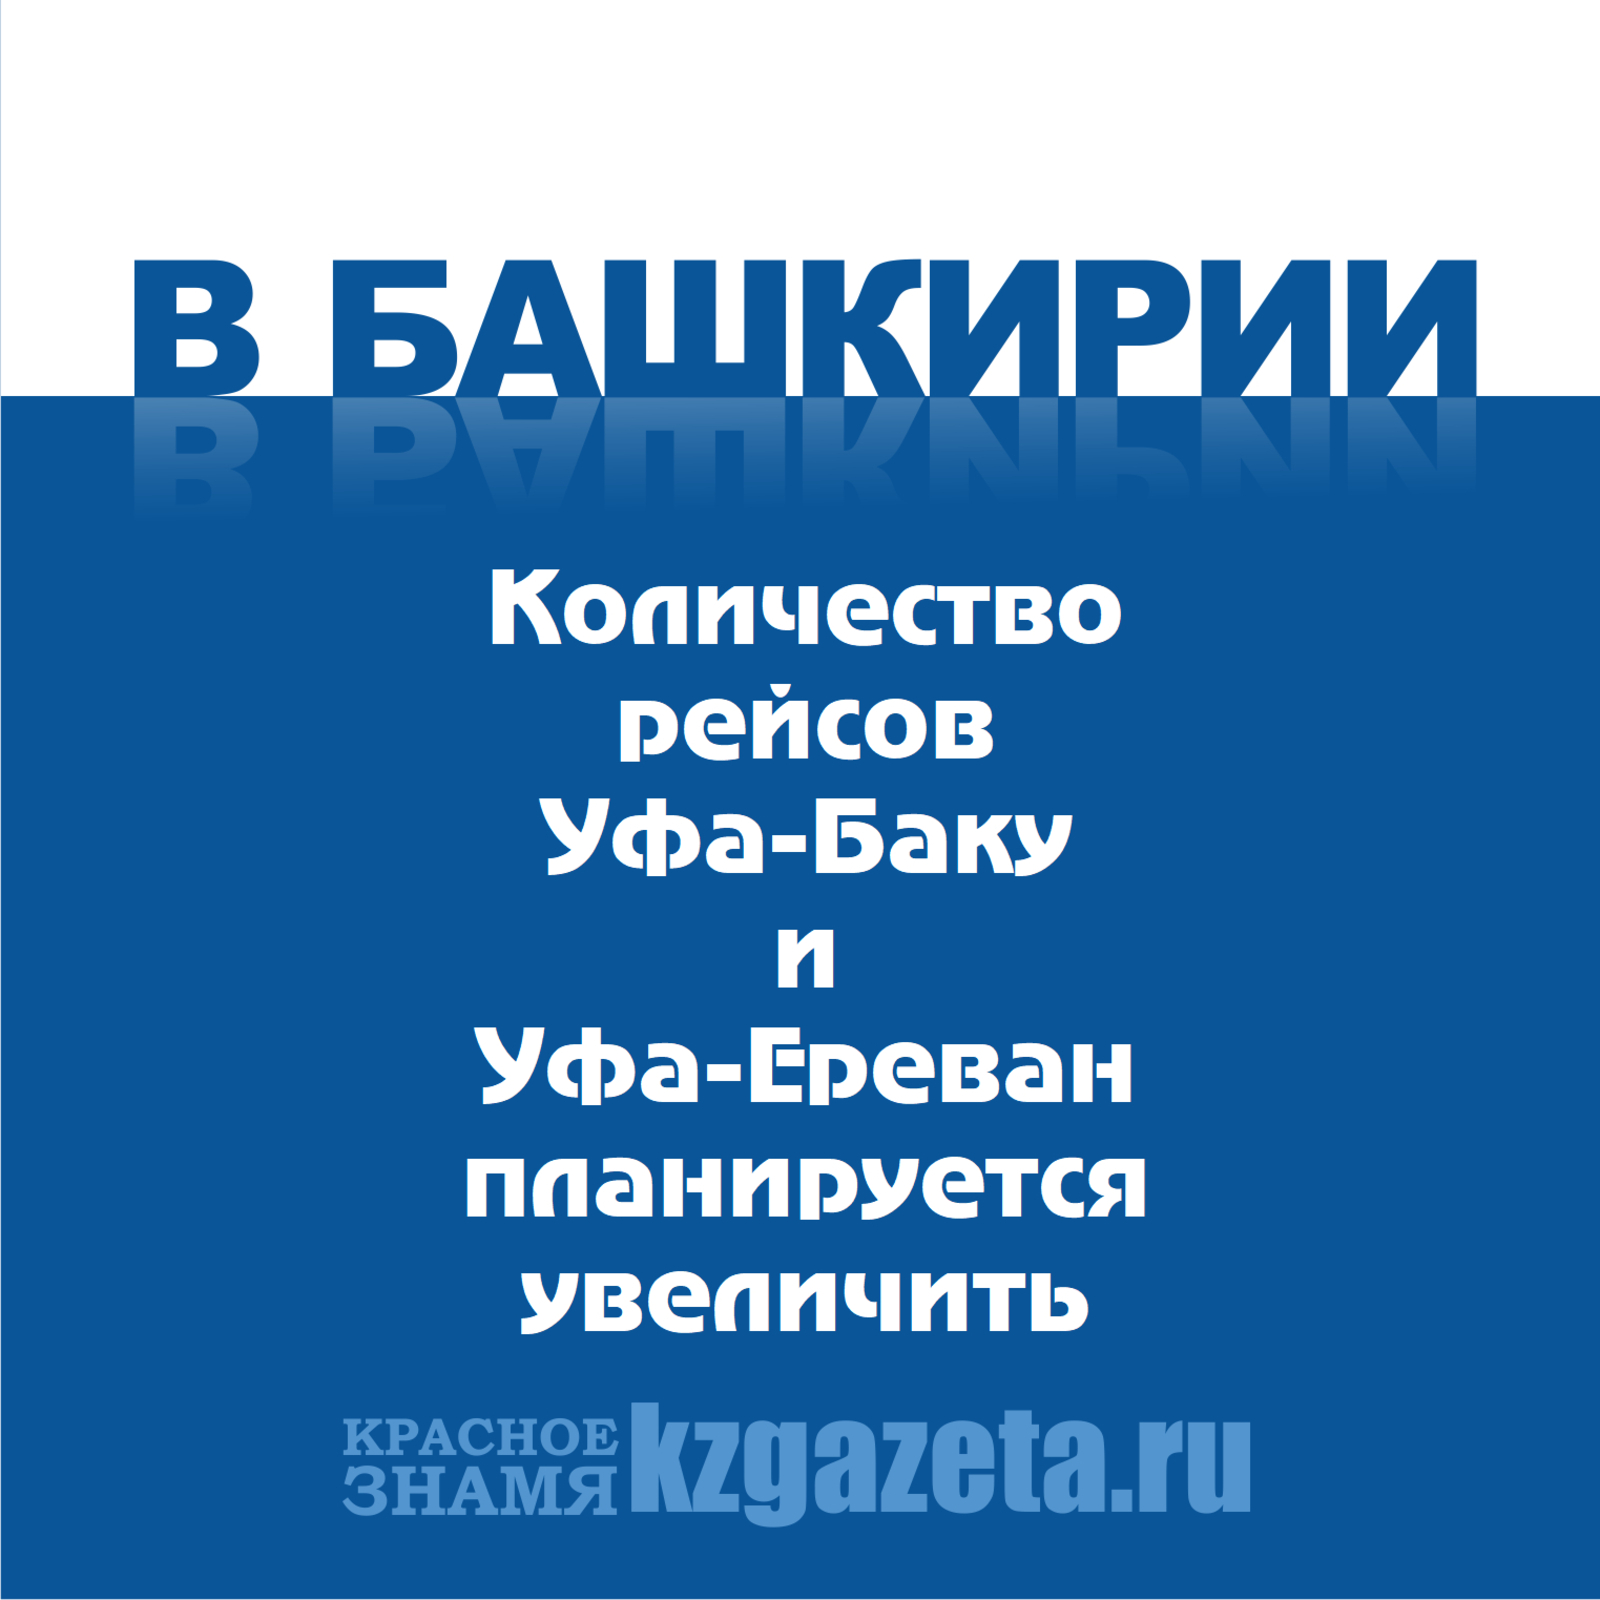 Количество рейсов Уфа-Баку и Уфа-Ереван планируется увеличить